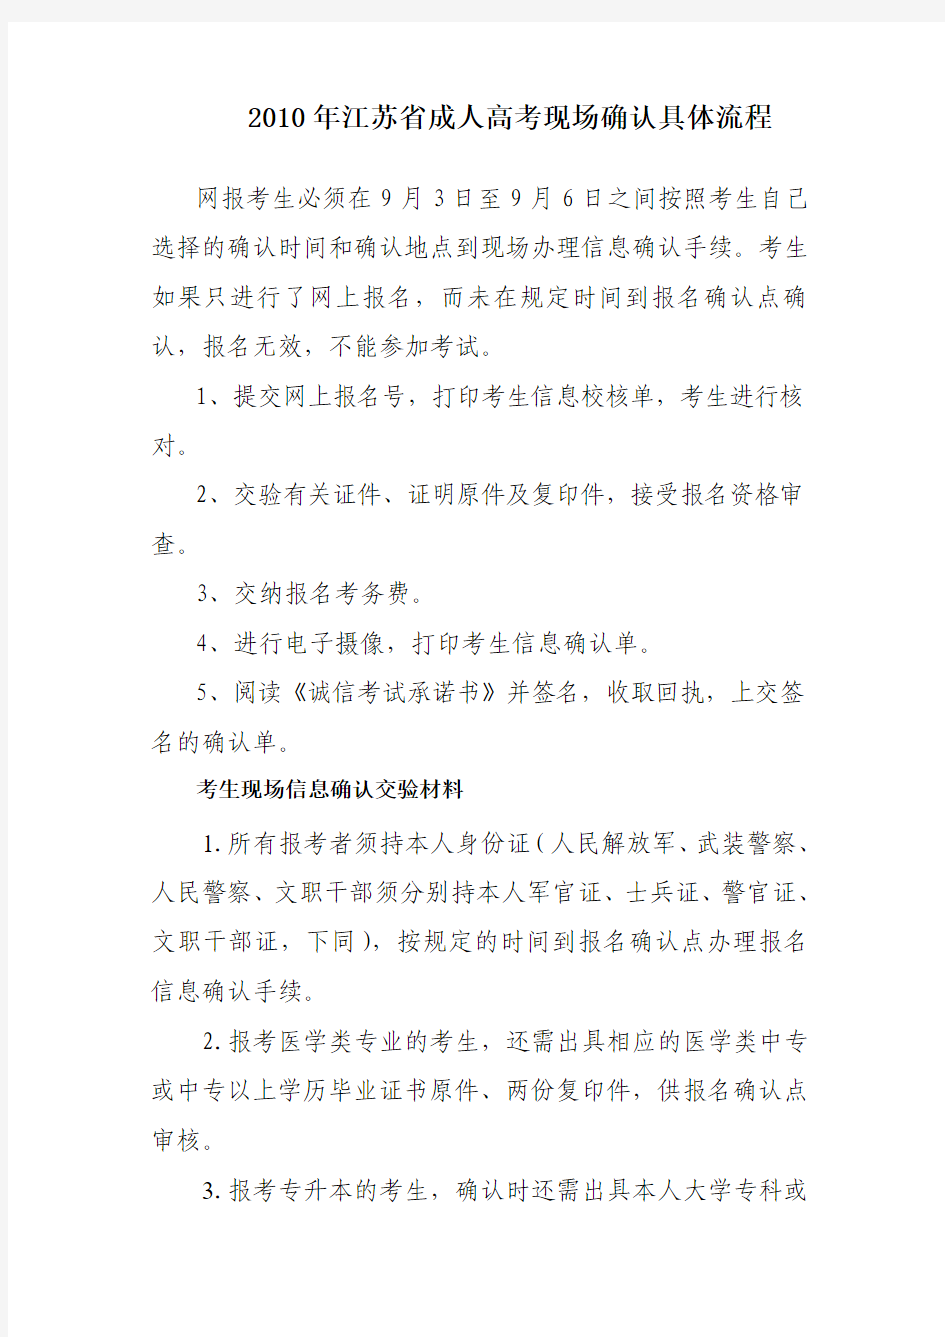 2010年江苏省成人高考现场确认具体流程